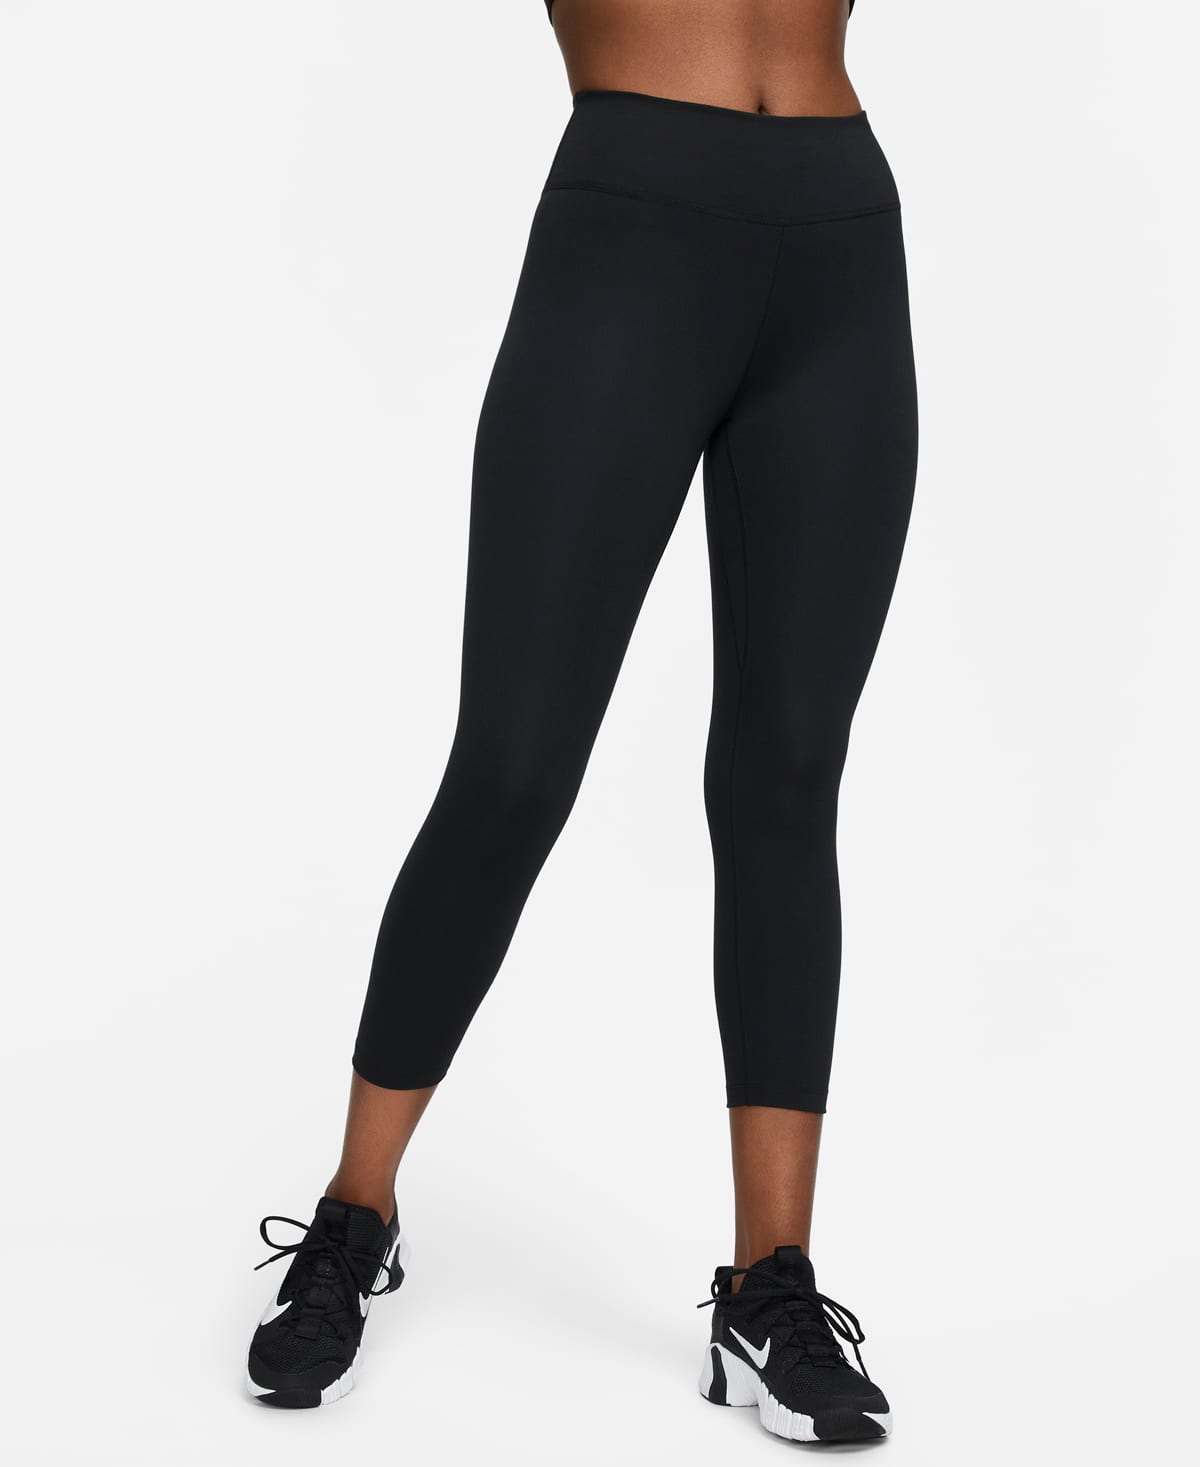 En el nombre cilindro transmisión Tabla de tallas de leggings para mujer. Nike